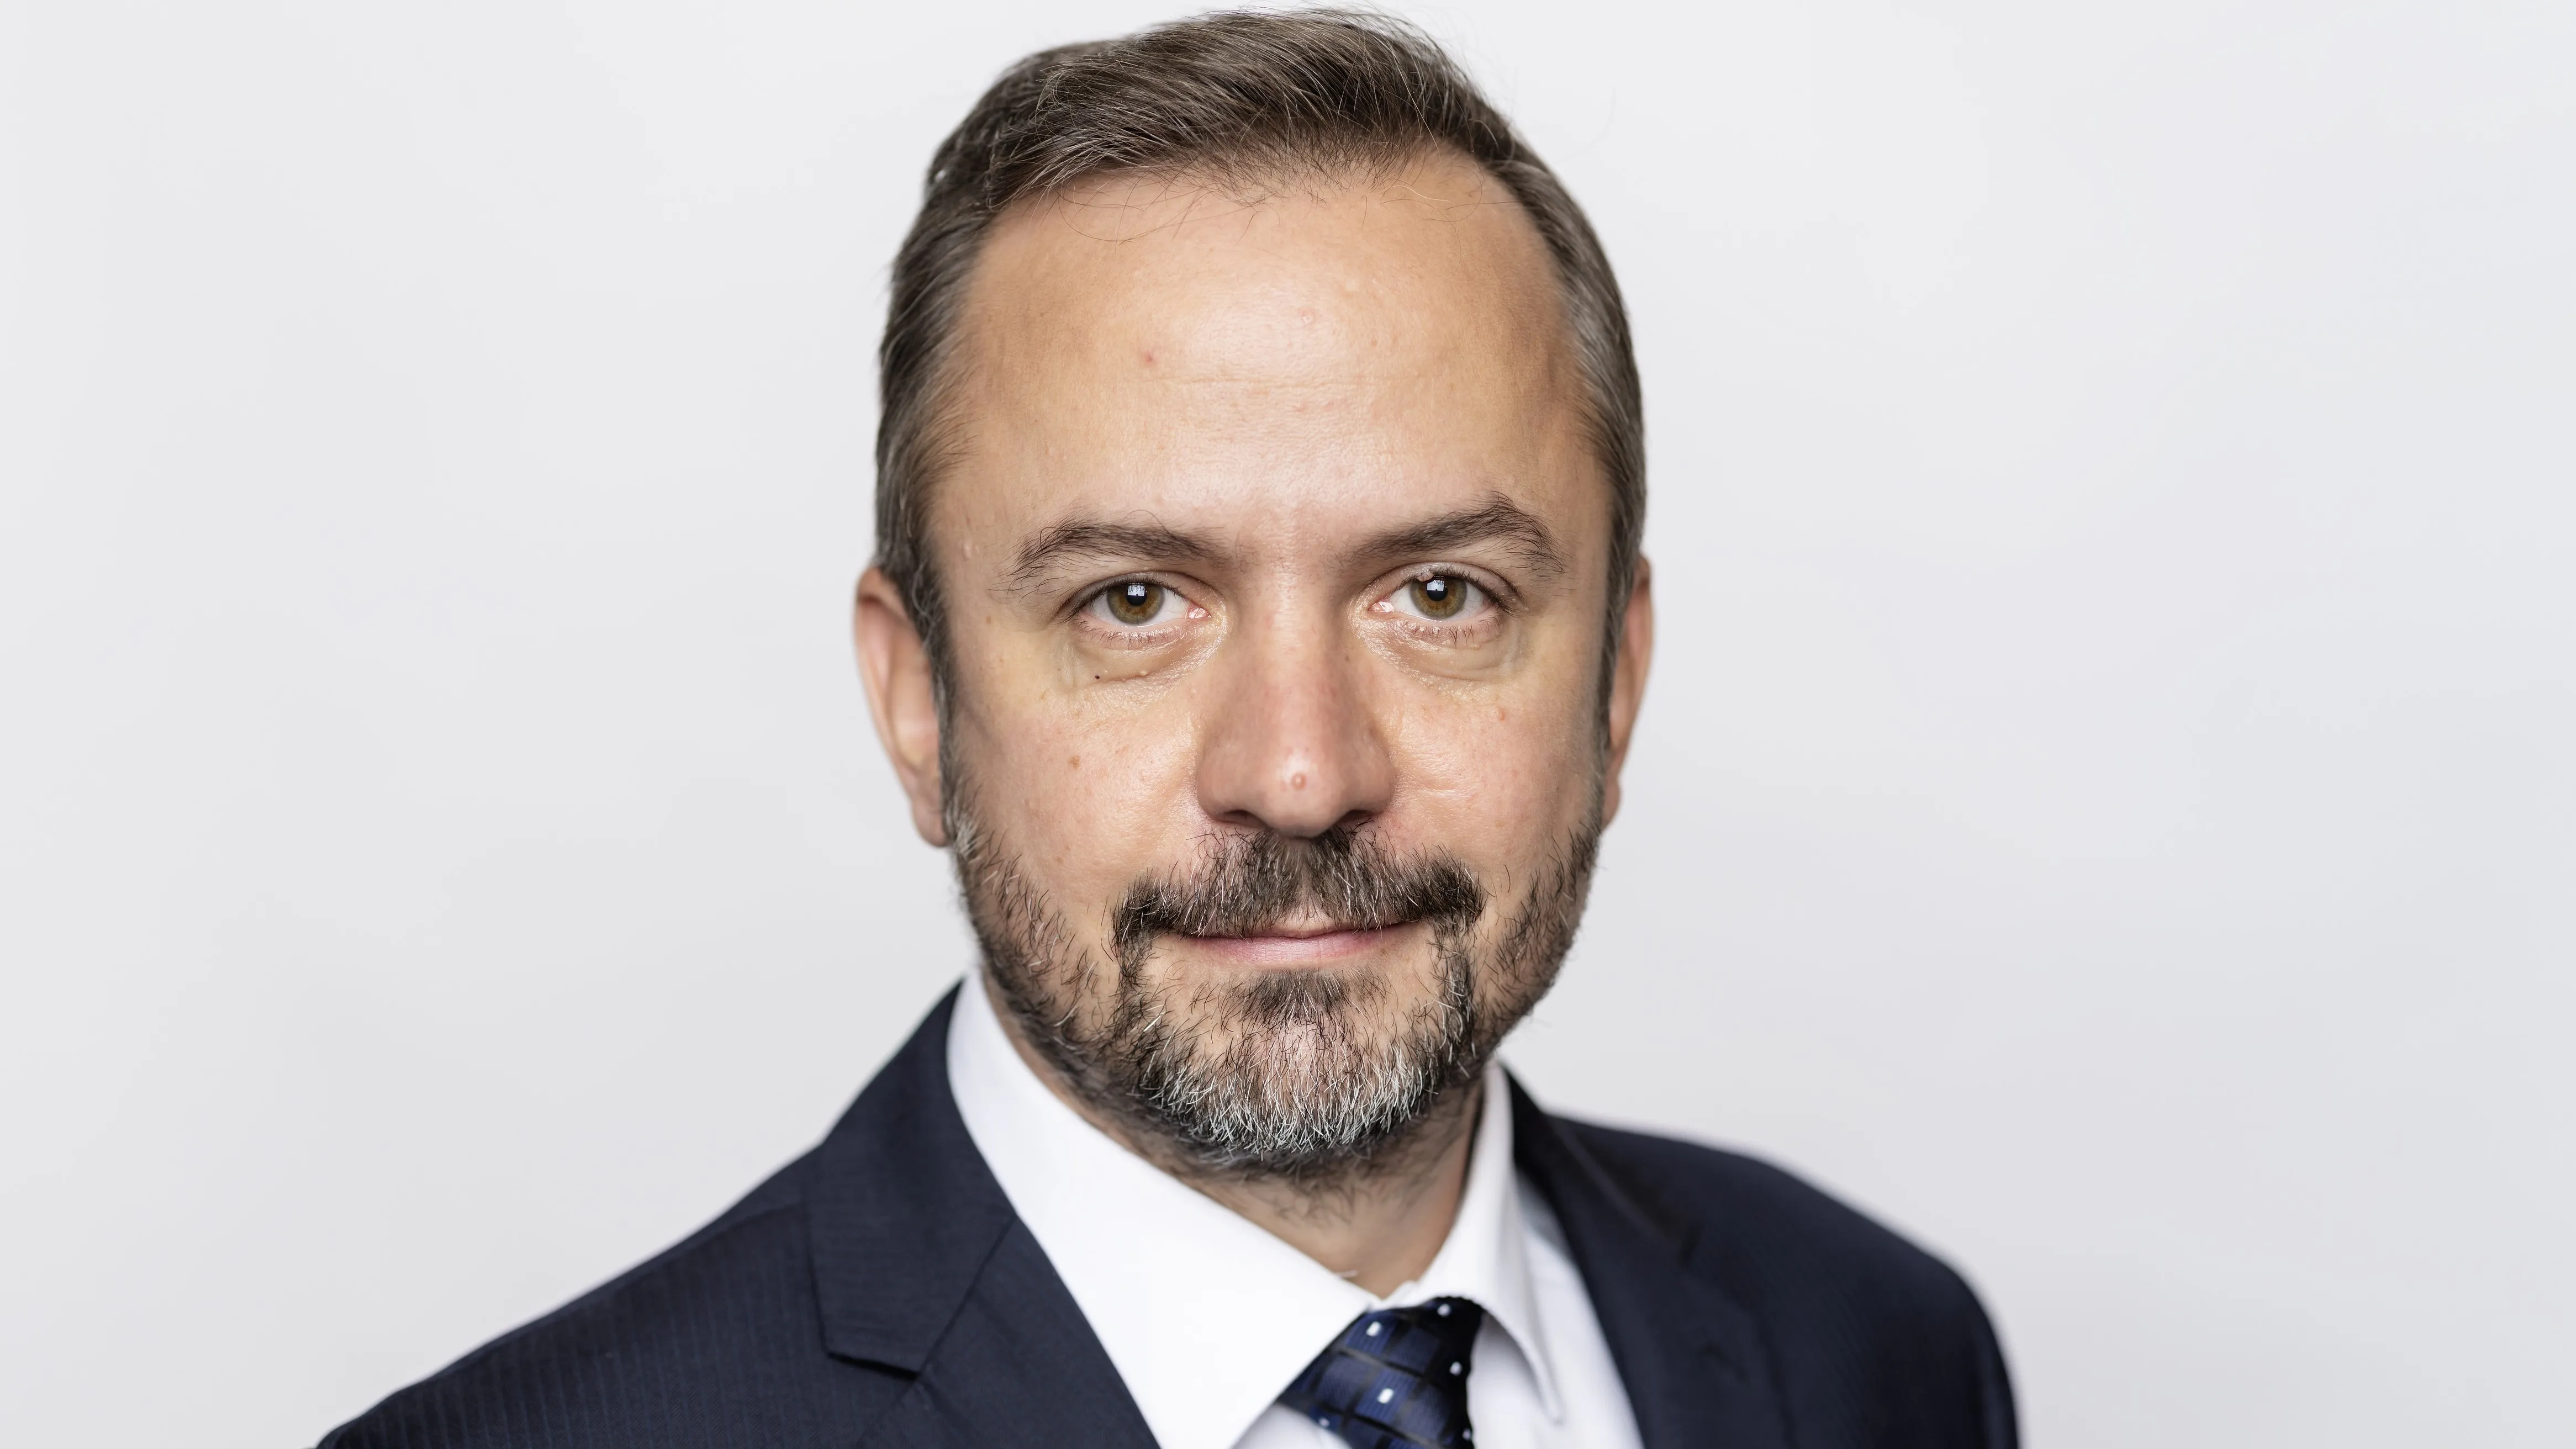 Ministrem pro vědu má být Marek Ženíšek. Výkonný výbor TOP 09 schválil nominaci